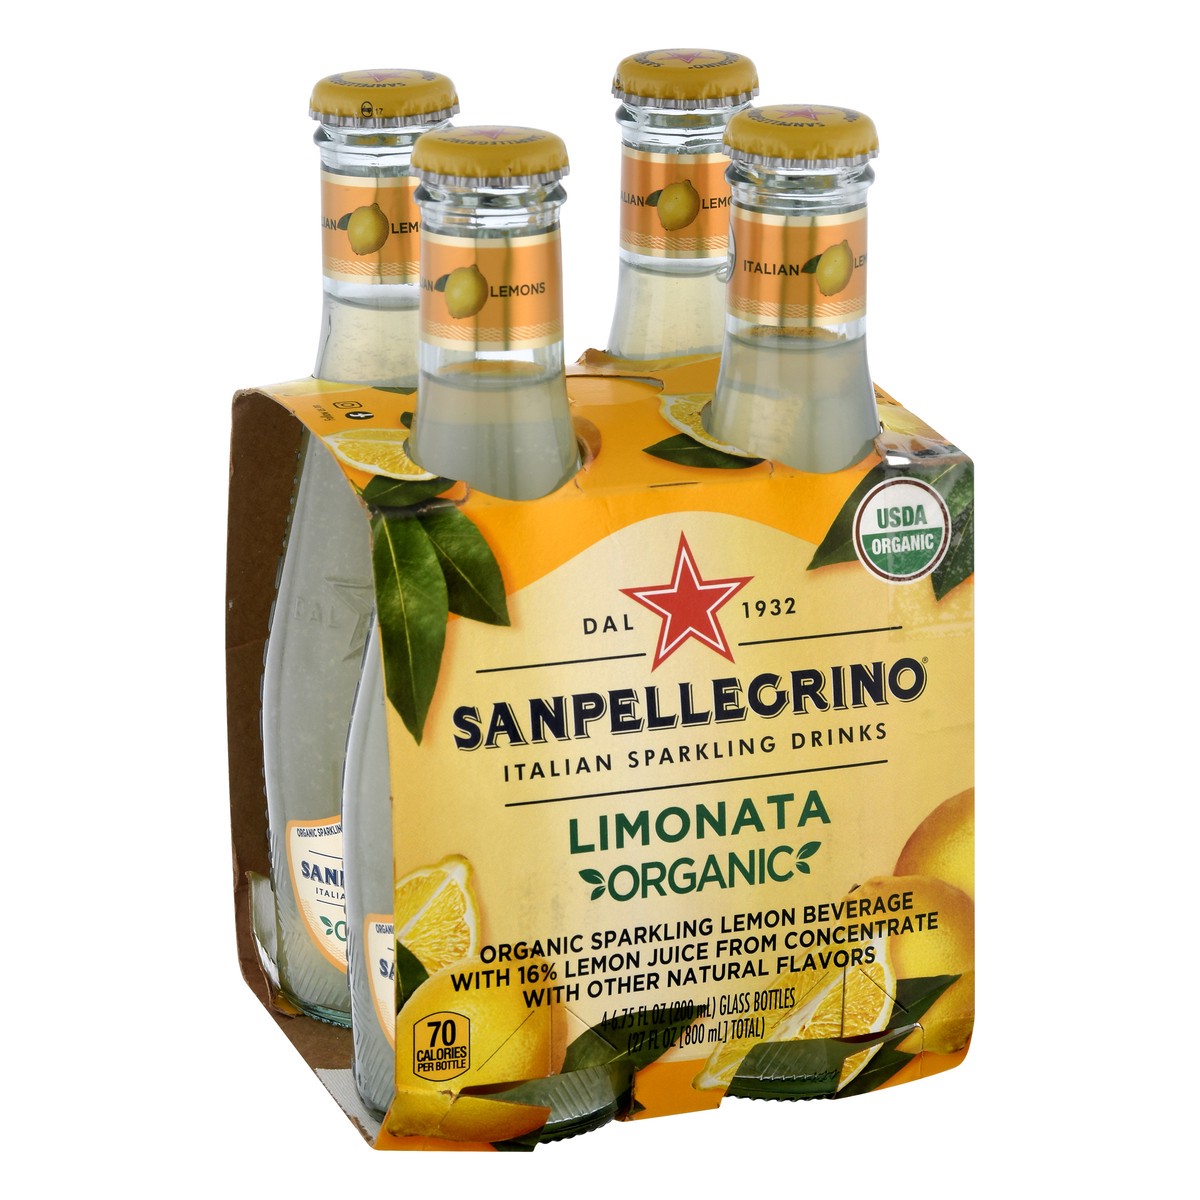 slide 6 of 9, SANPELLEGRINO Italian Sparkling Drinks Organic Limonata, 6.76 oz. glass bottle 4-pack, 27 oz